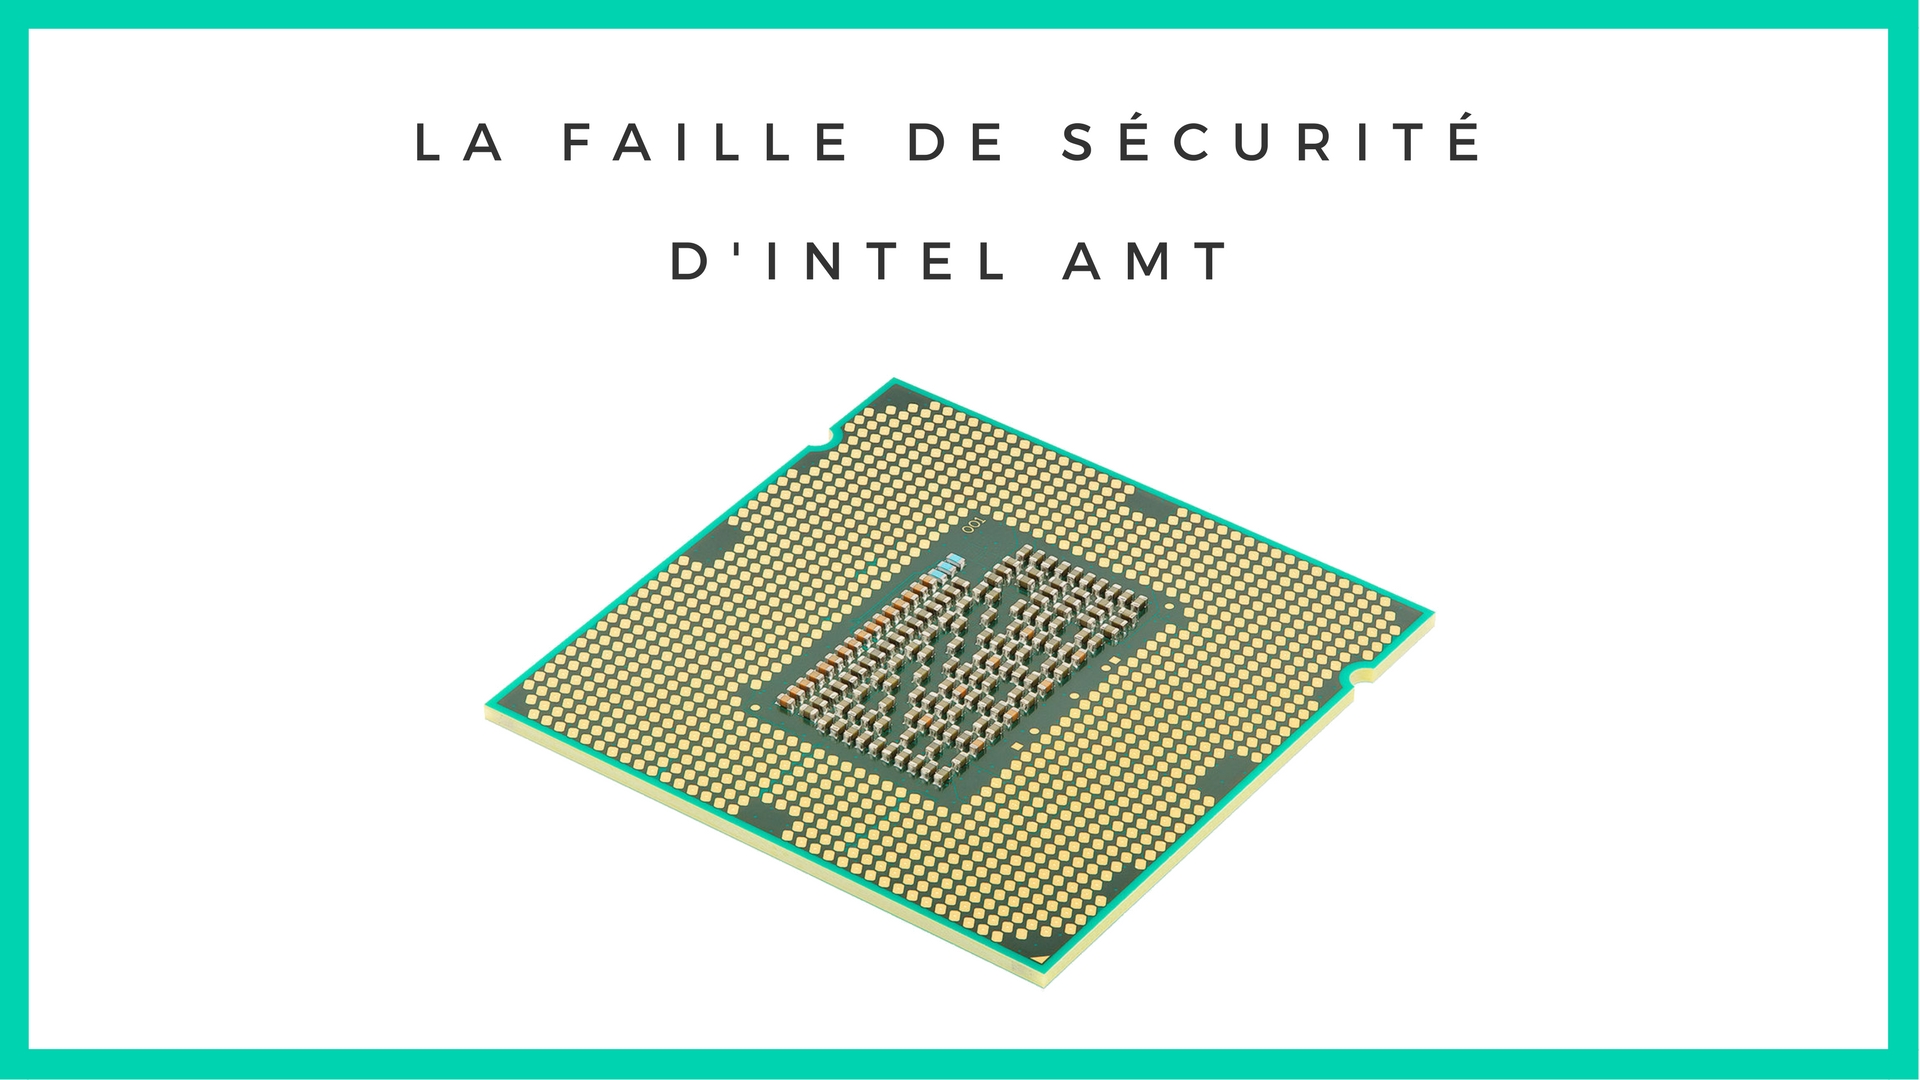 Notre article sur la faille de sécurité Intel AMT